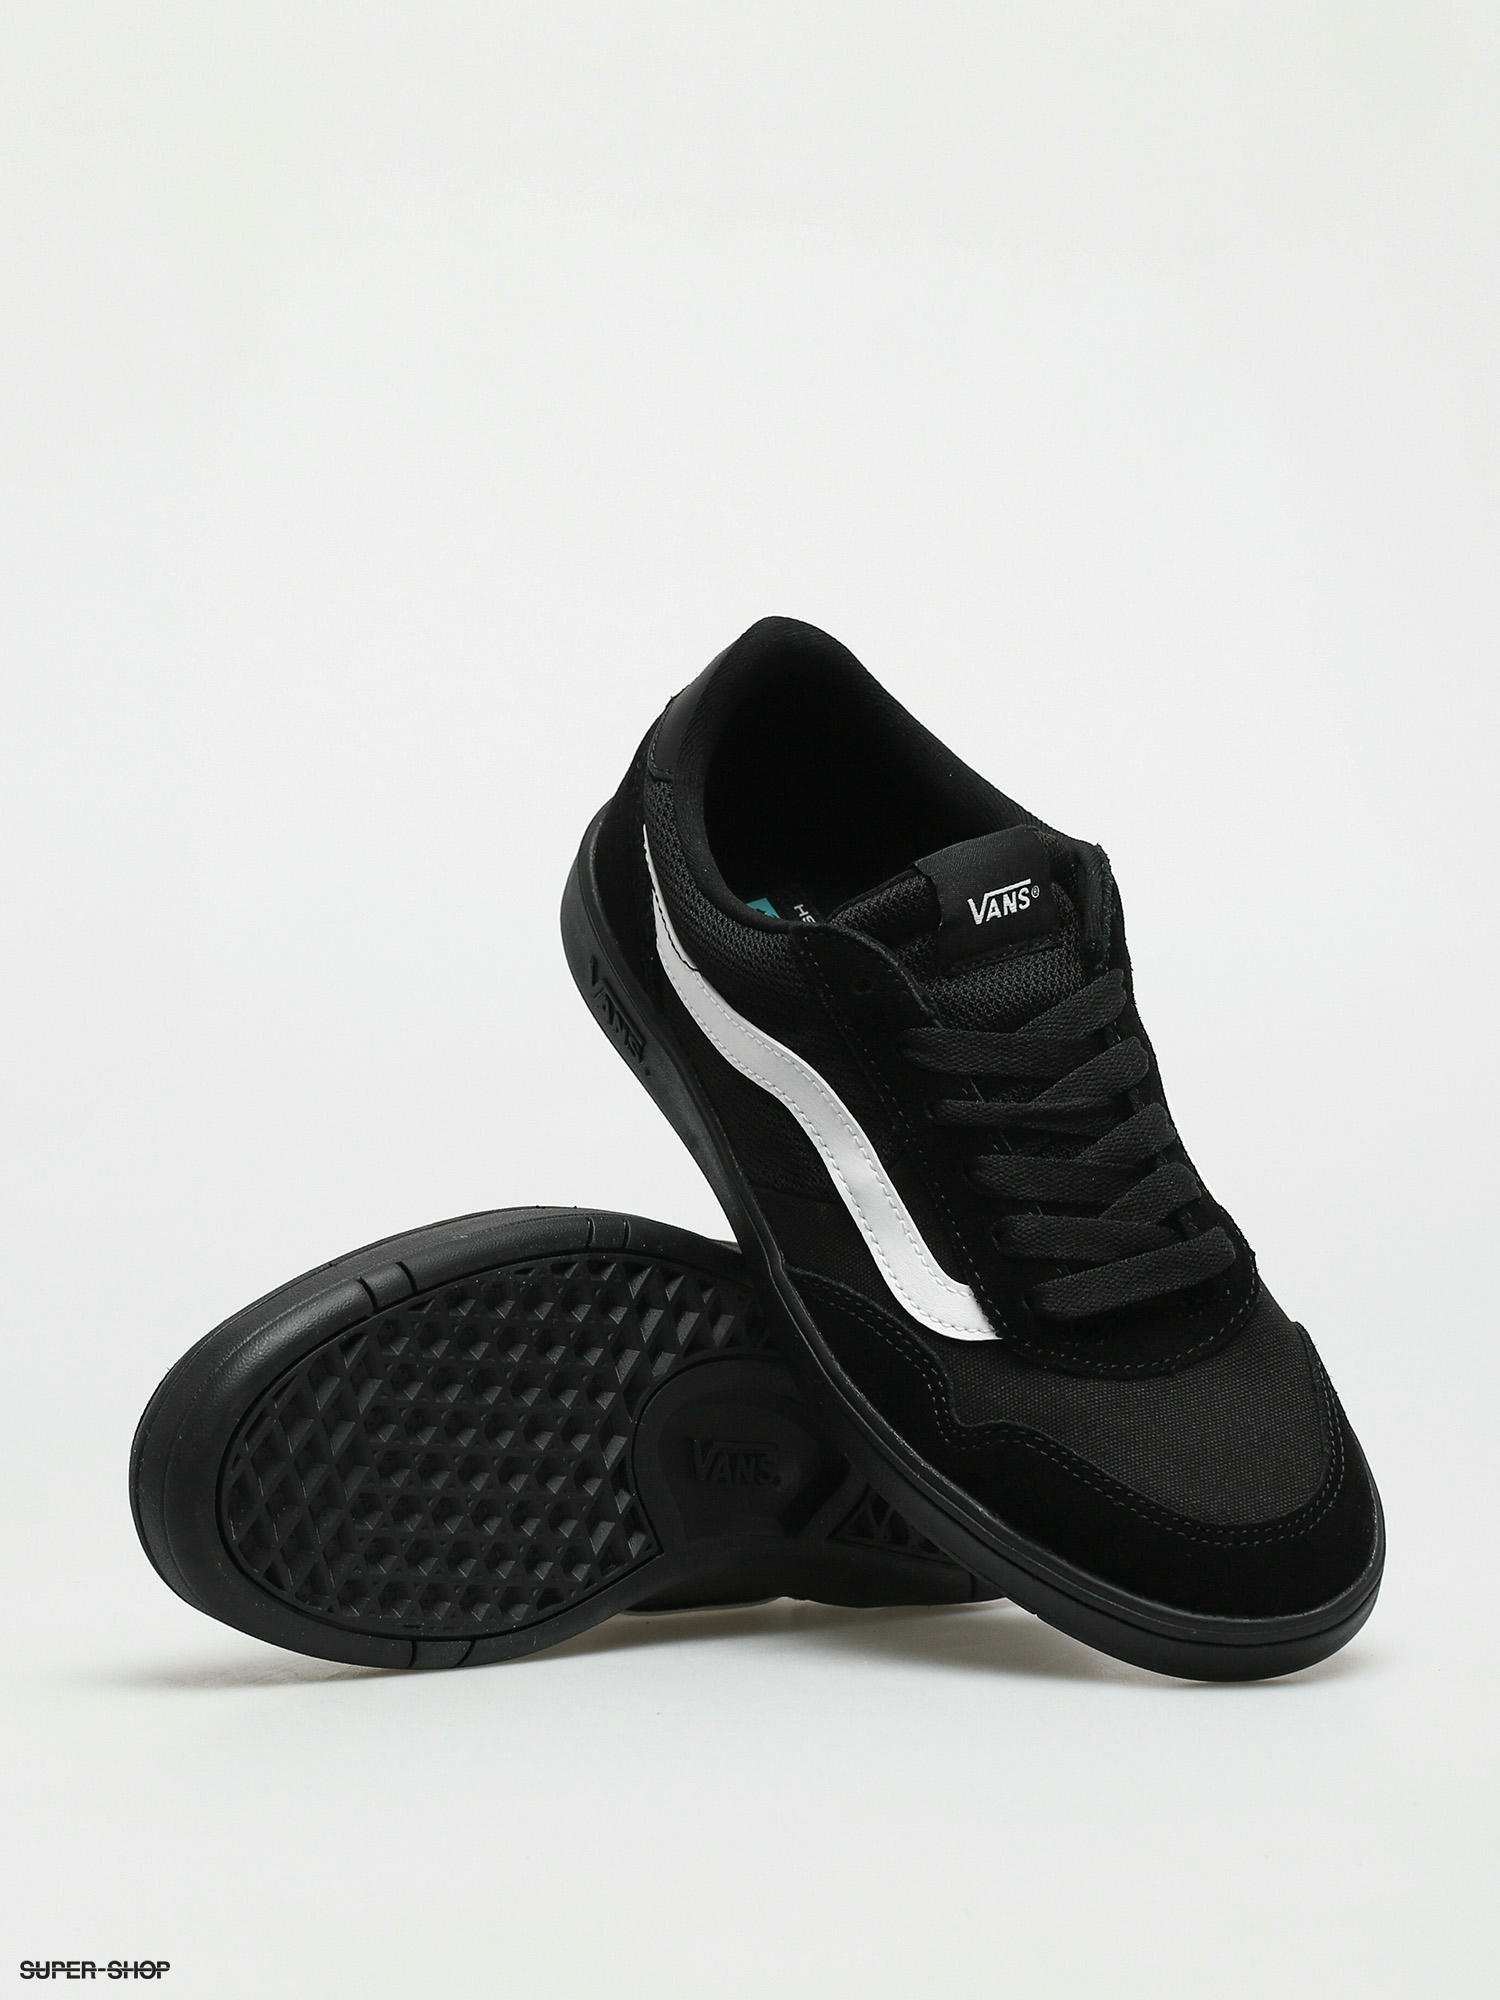 Vans Cruze CC Shoes (staple/black/black)